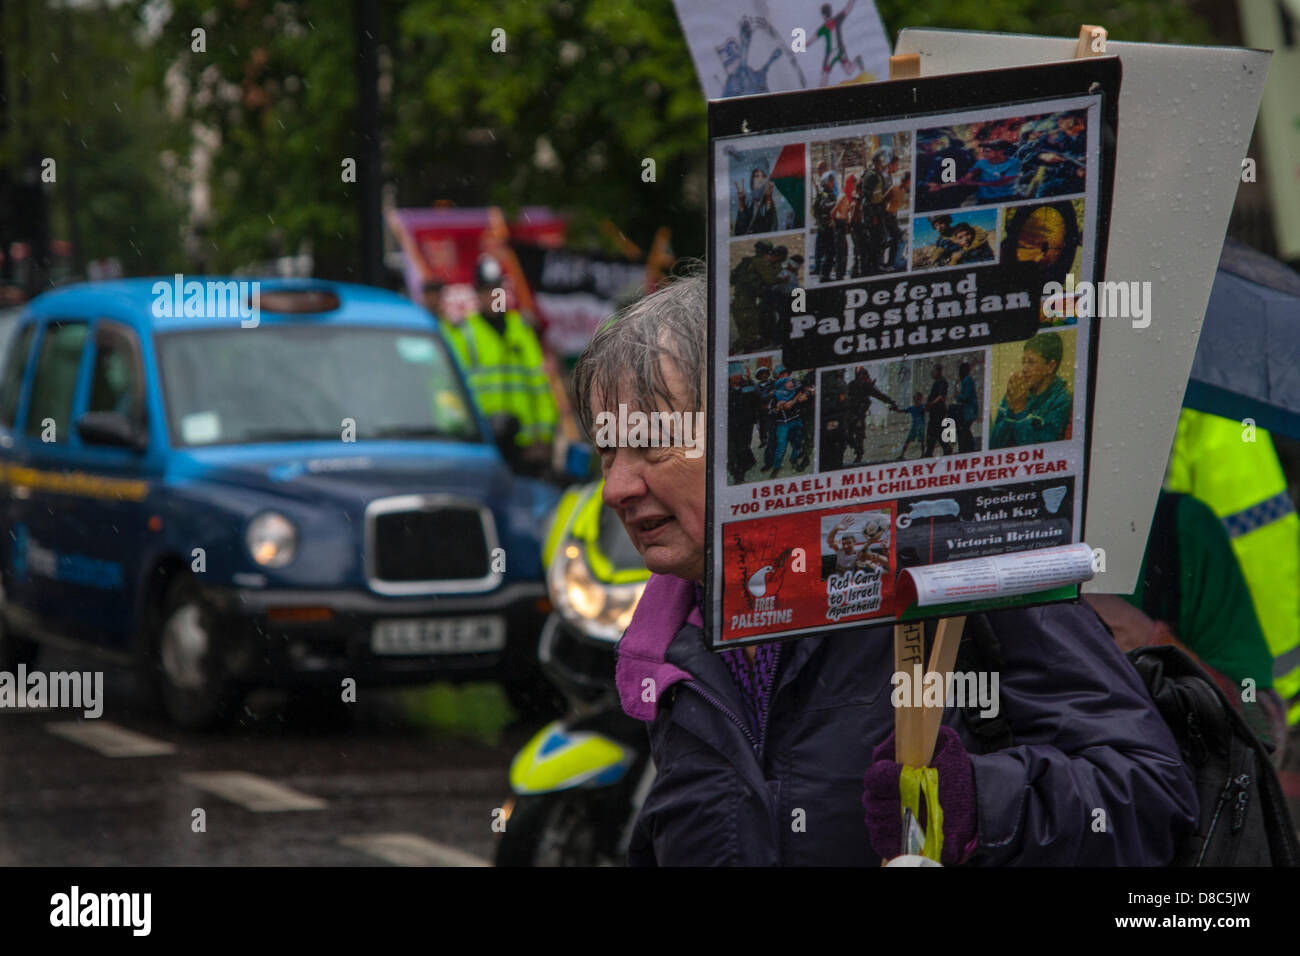 Londres, Royaume-Uni. 24 mai 2013 baignée par la pluie. Un militant pro-palestinien arrive à la manifestation à l'extérieur de l'hôtel Grosvenor House en tant que délégués de l'UEFA pour répondre à leur congrès annuel. Crédit : Paul Davey / Alamy Live News Banque D'Images